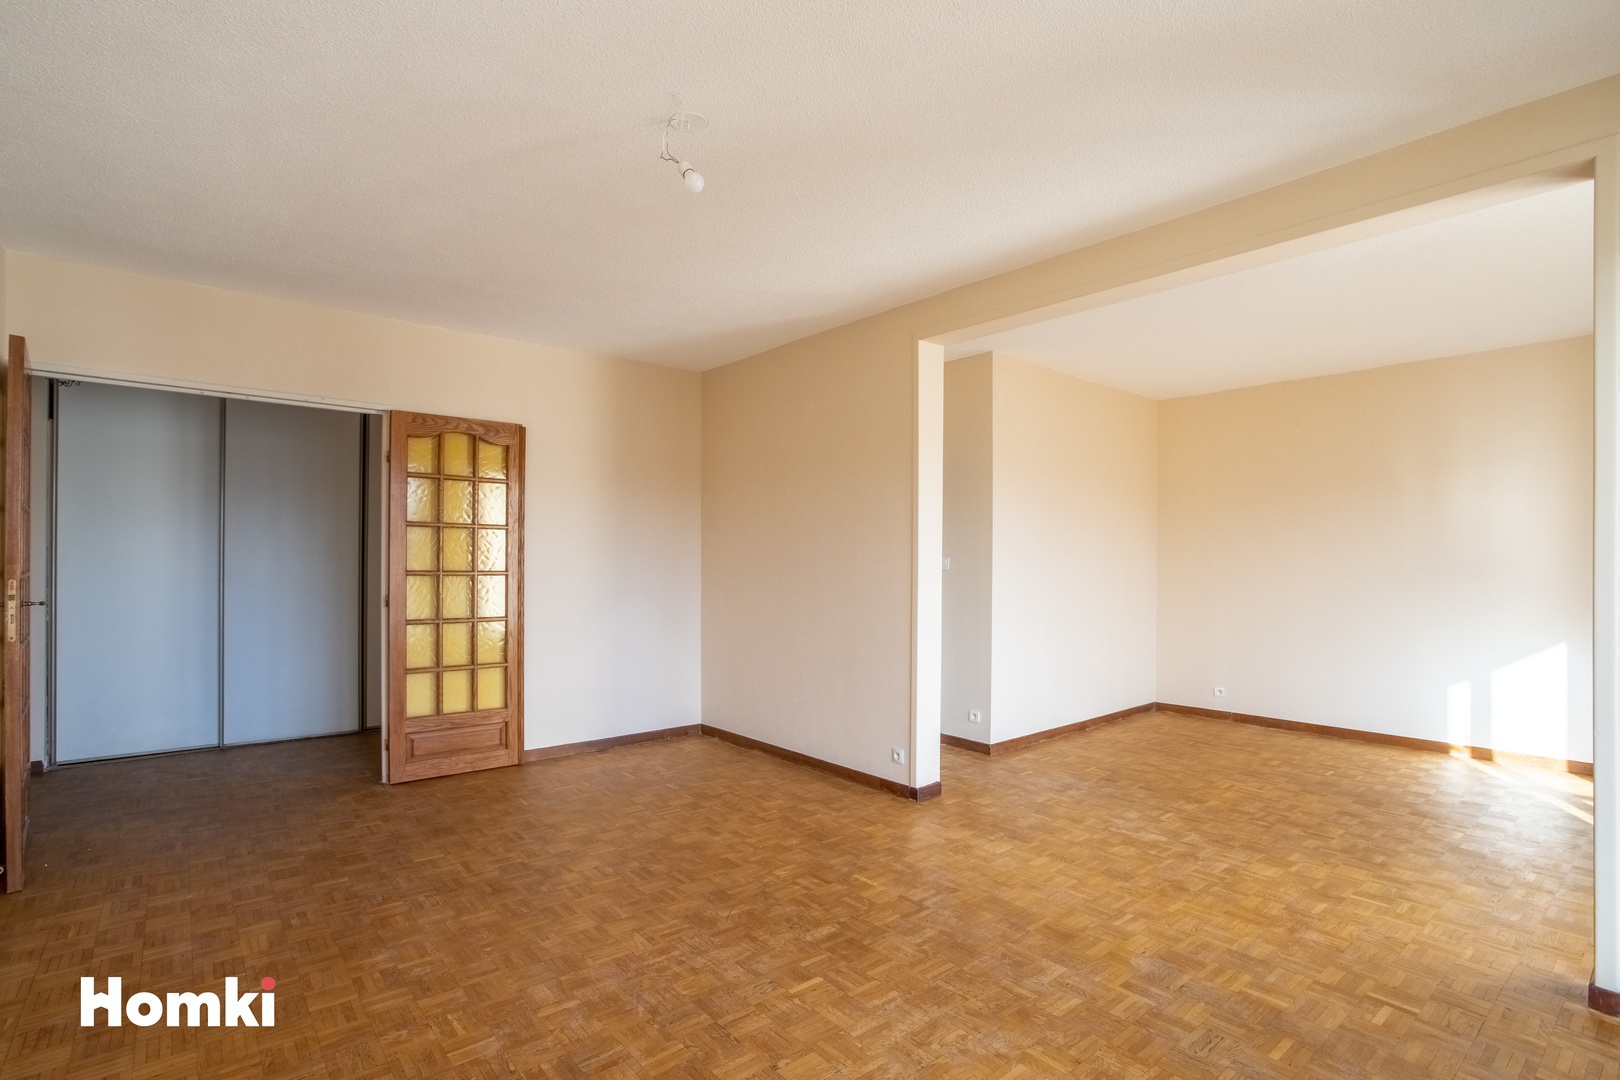 Homki - Vente Appartement  de 81.0 m² à Toulon 83200